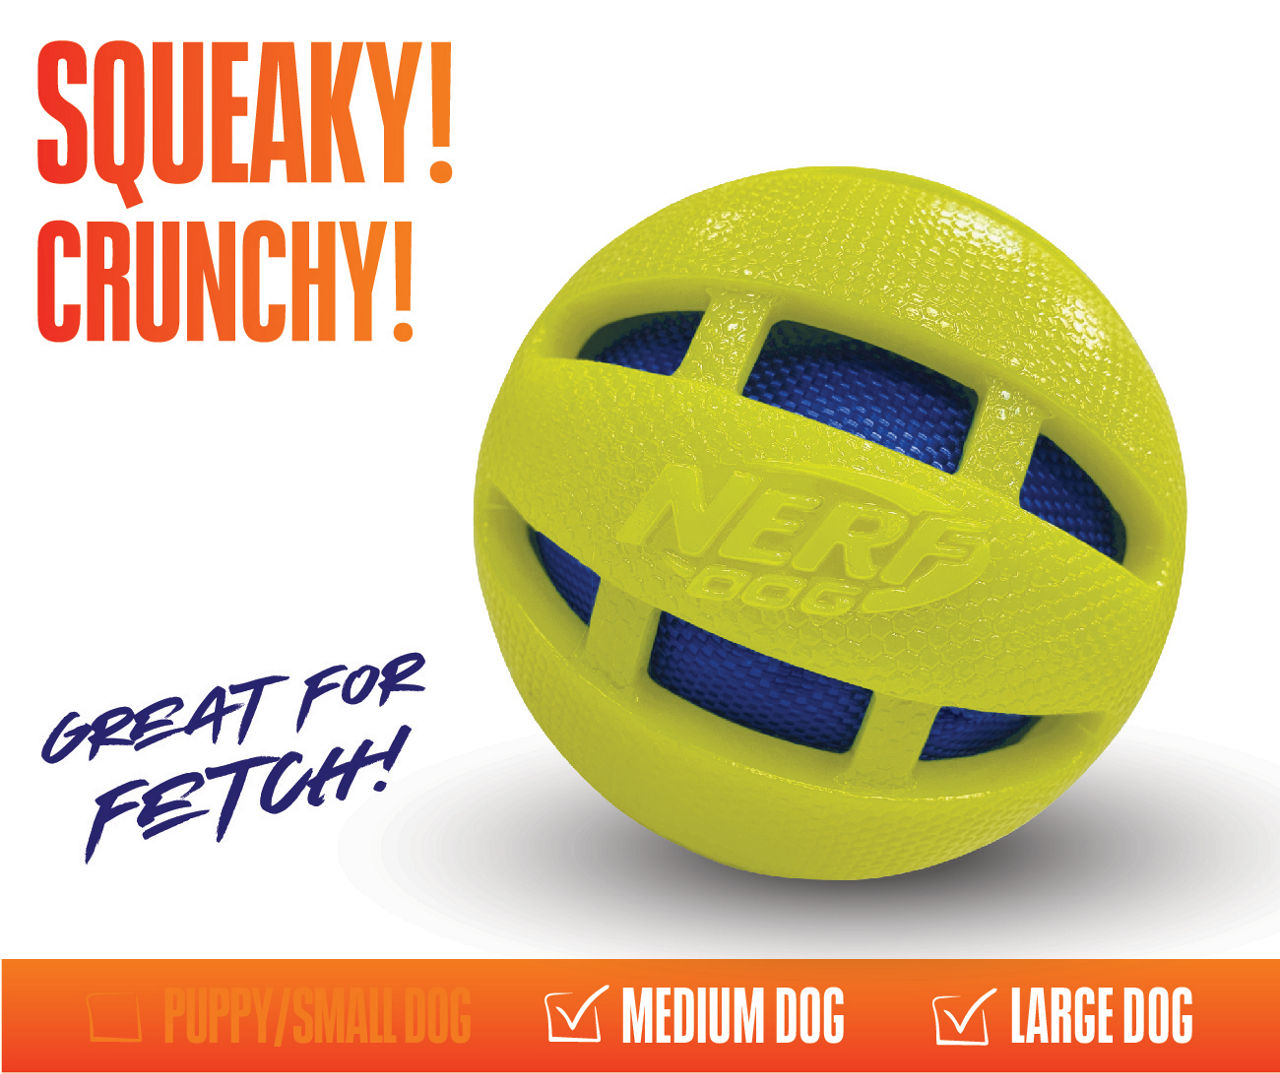 Nerf Blue & Green Squeak & Crunch Pet Toy Ball